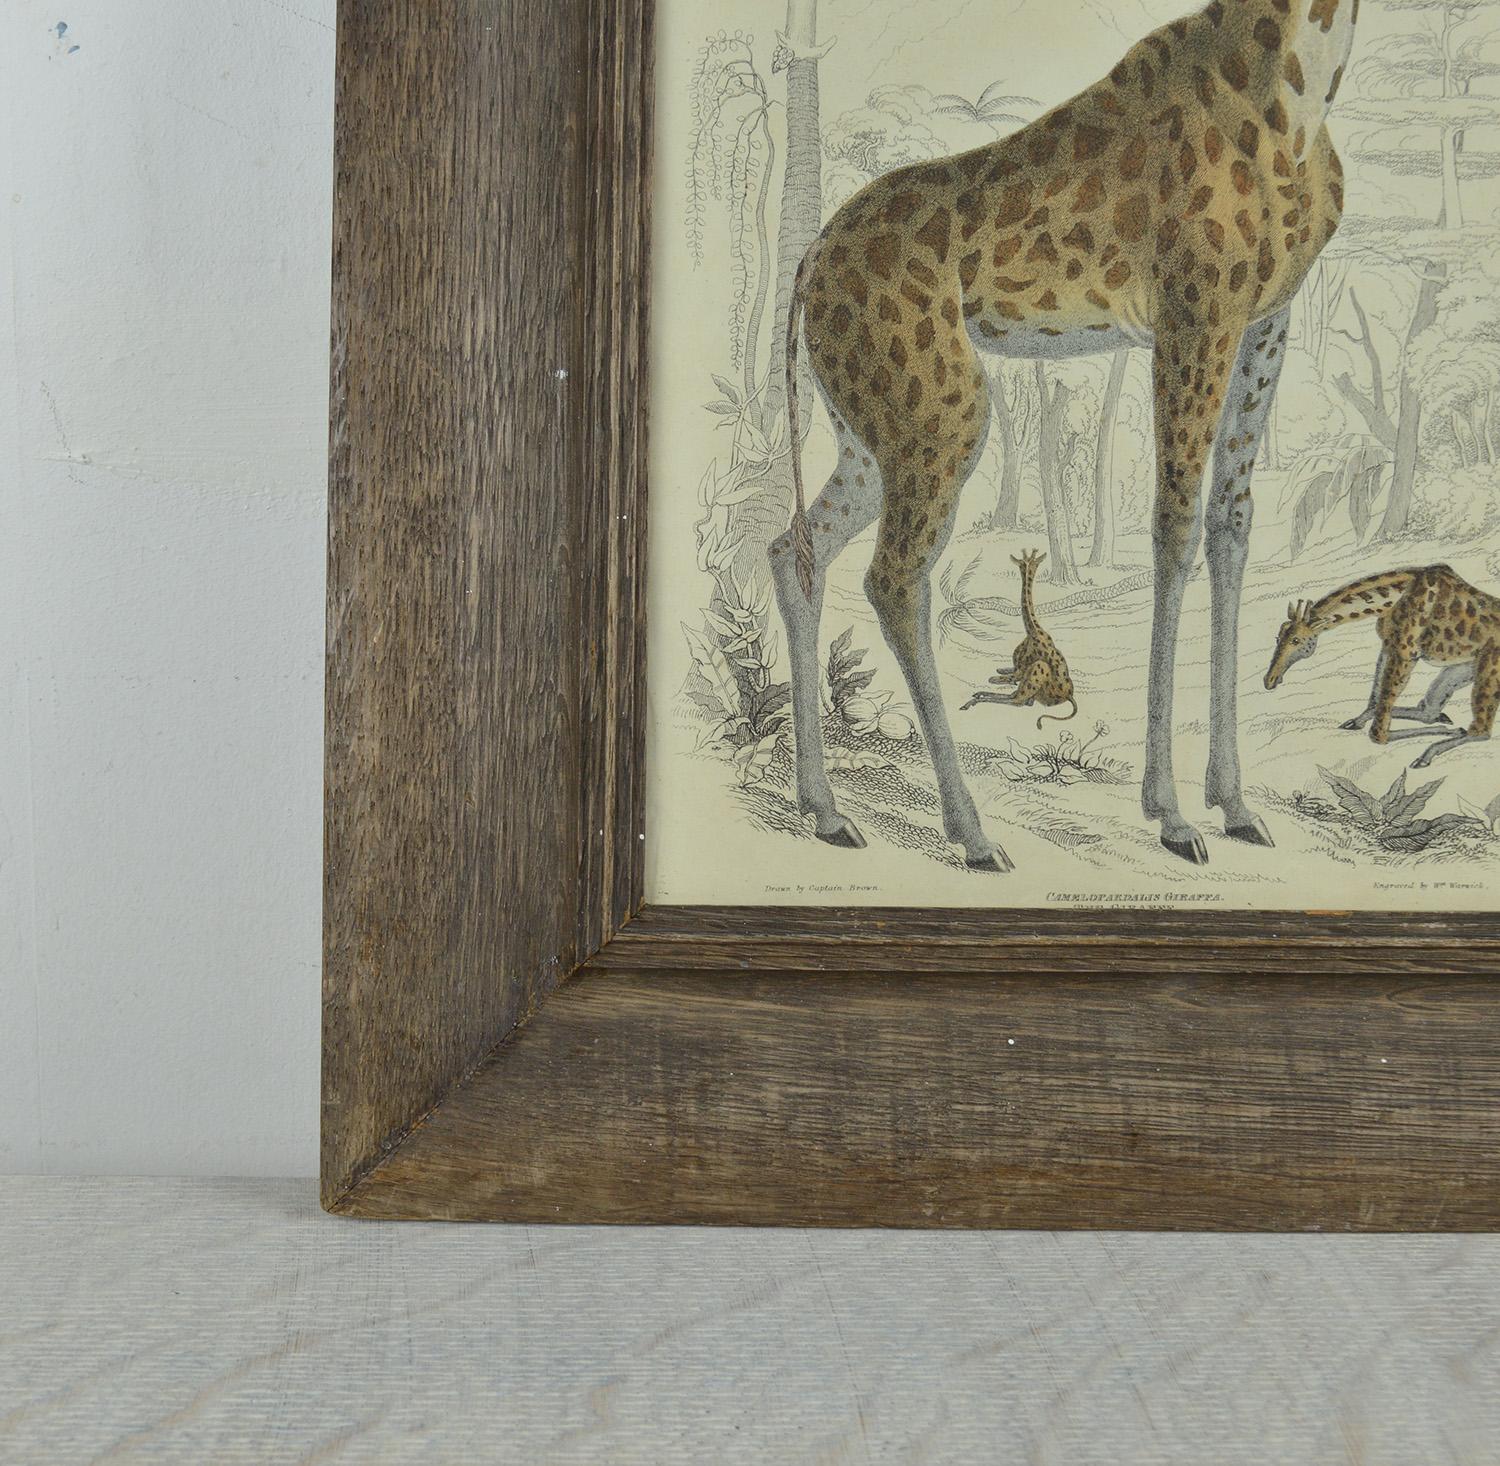 English Original Antique Print of a Giraffe, 1835